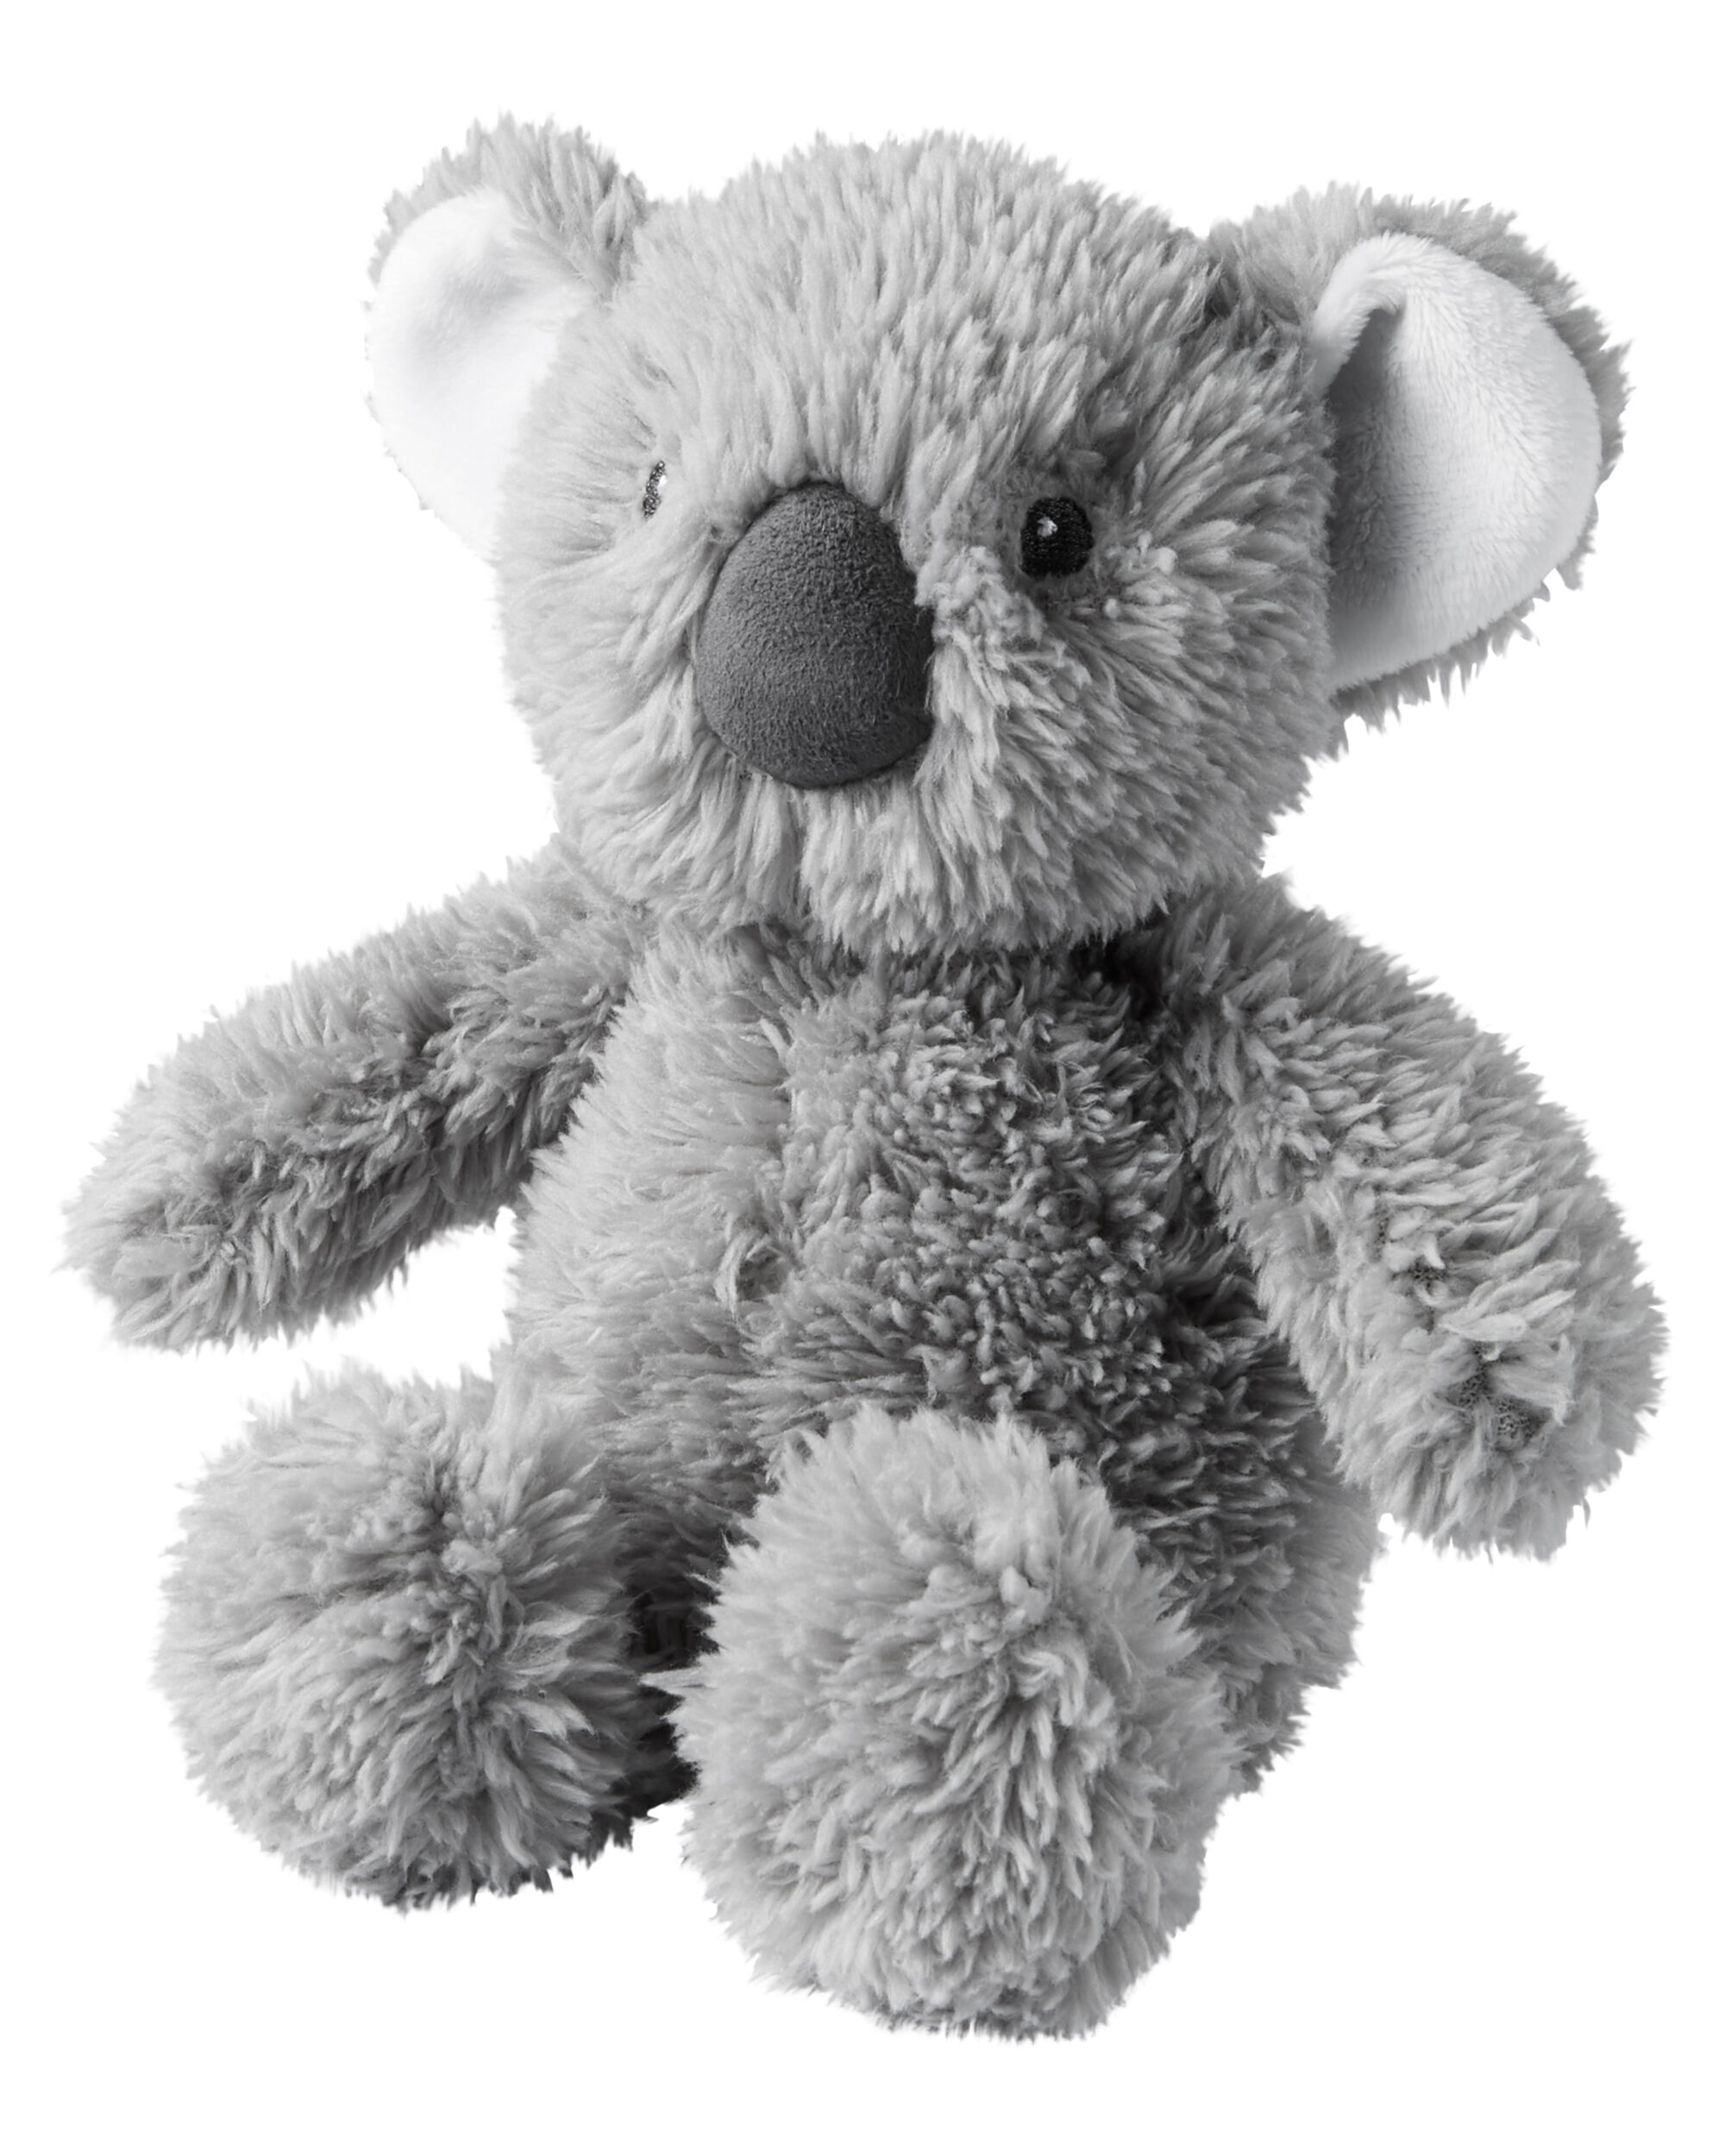 stuffed koala bear